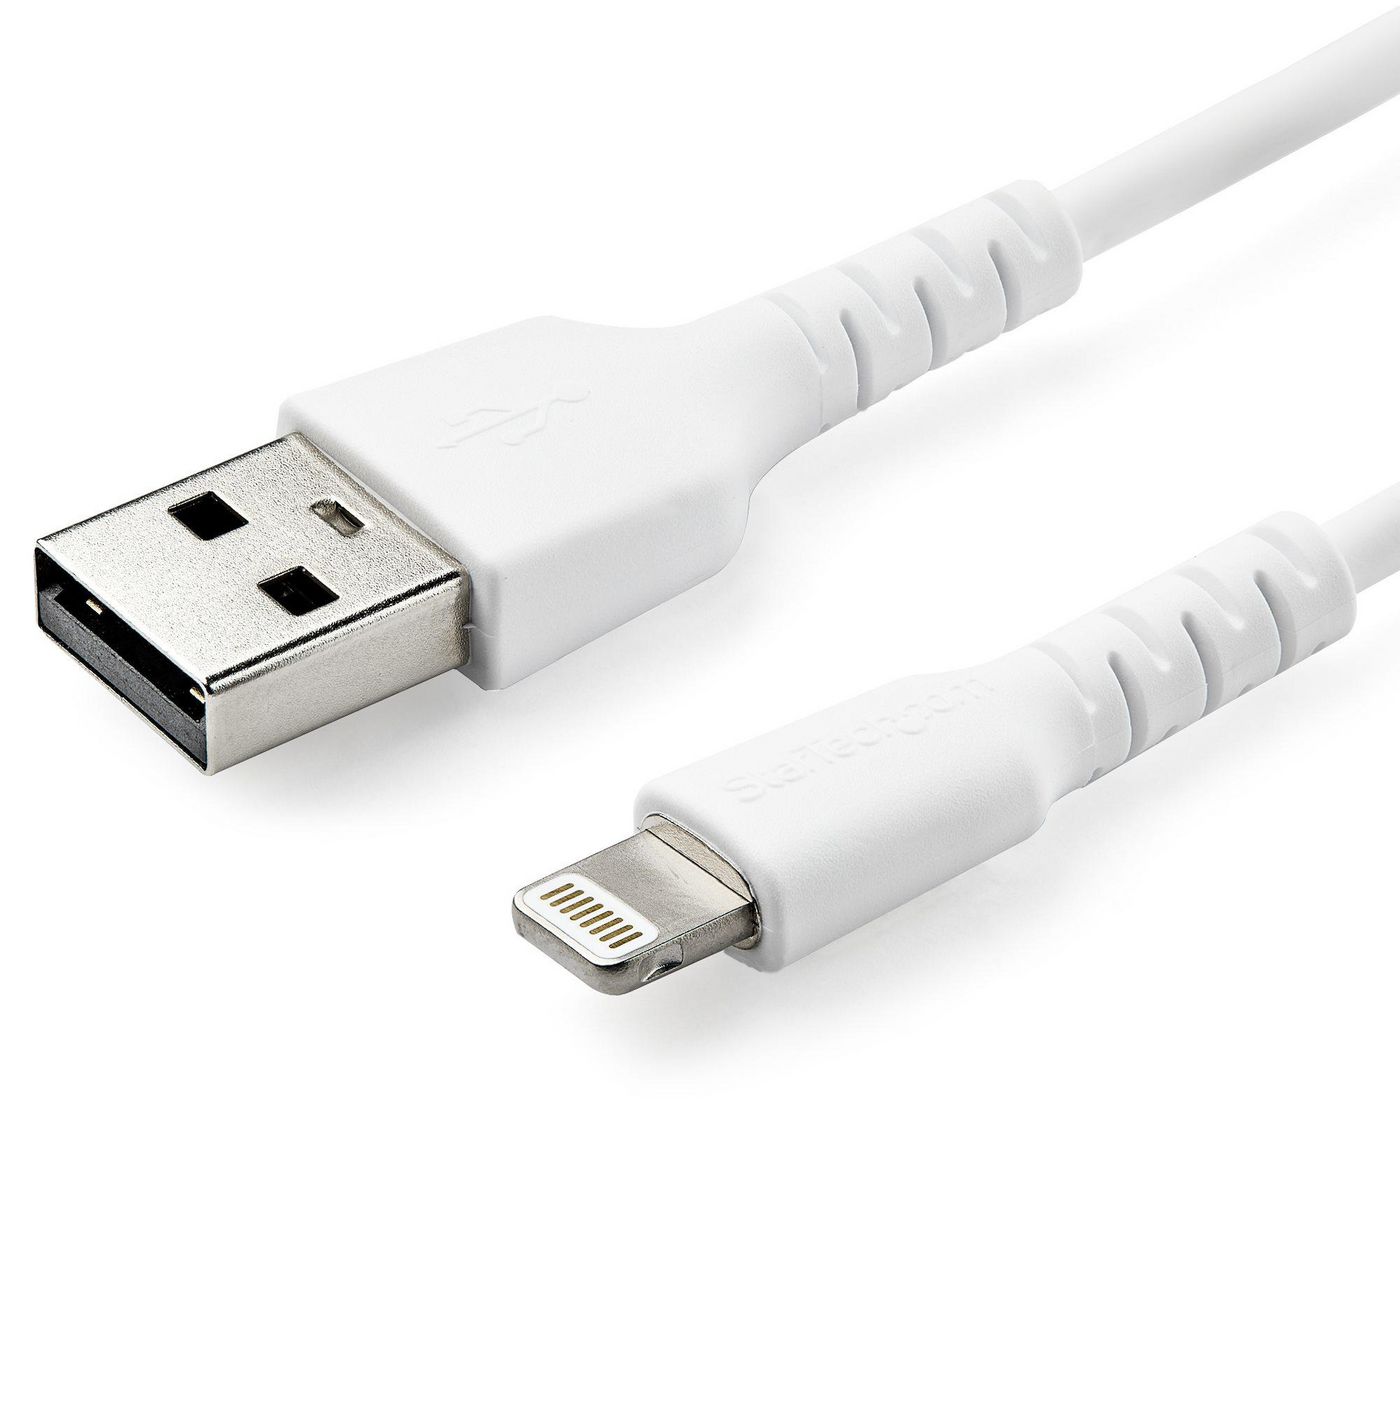 STARTECH.COM USB auf Lightning Kabel - 1m - MFi zertifiziertes Lightning Kabel - weiss - robust und